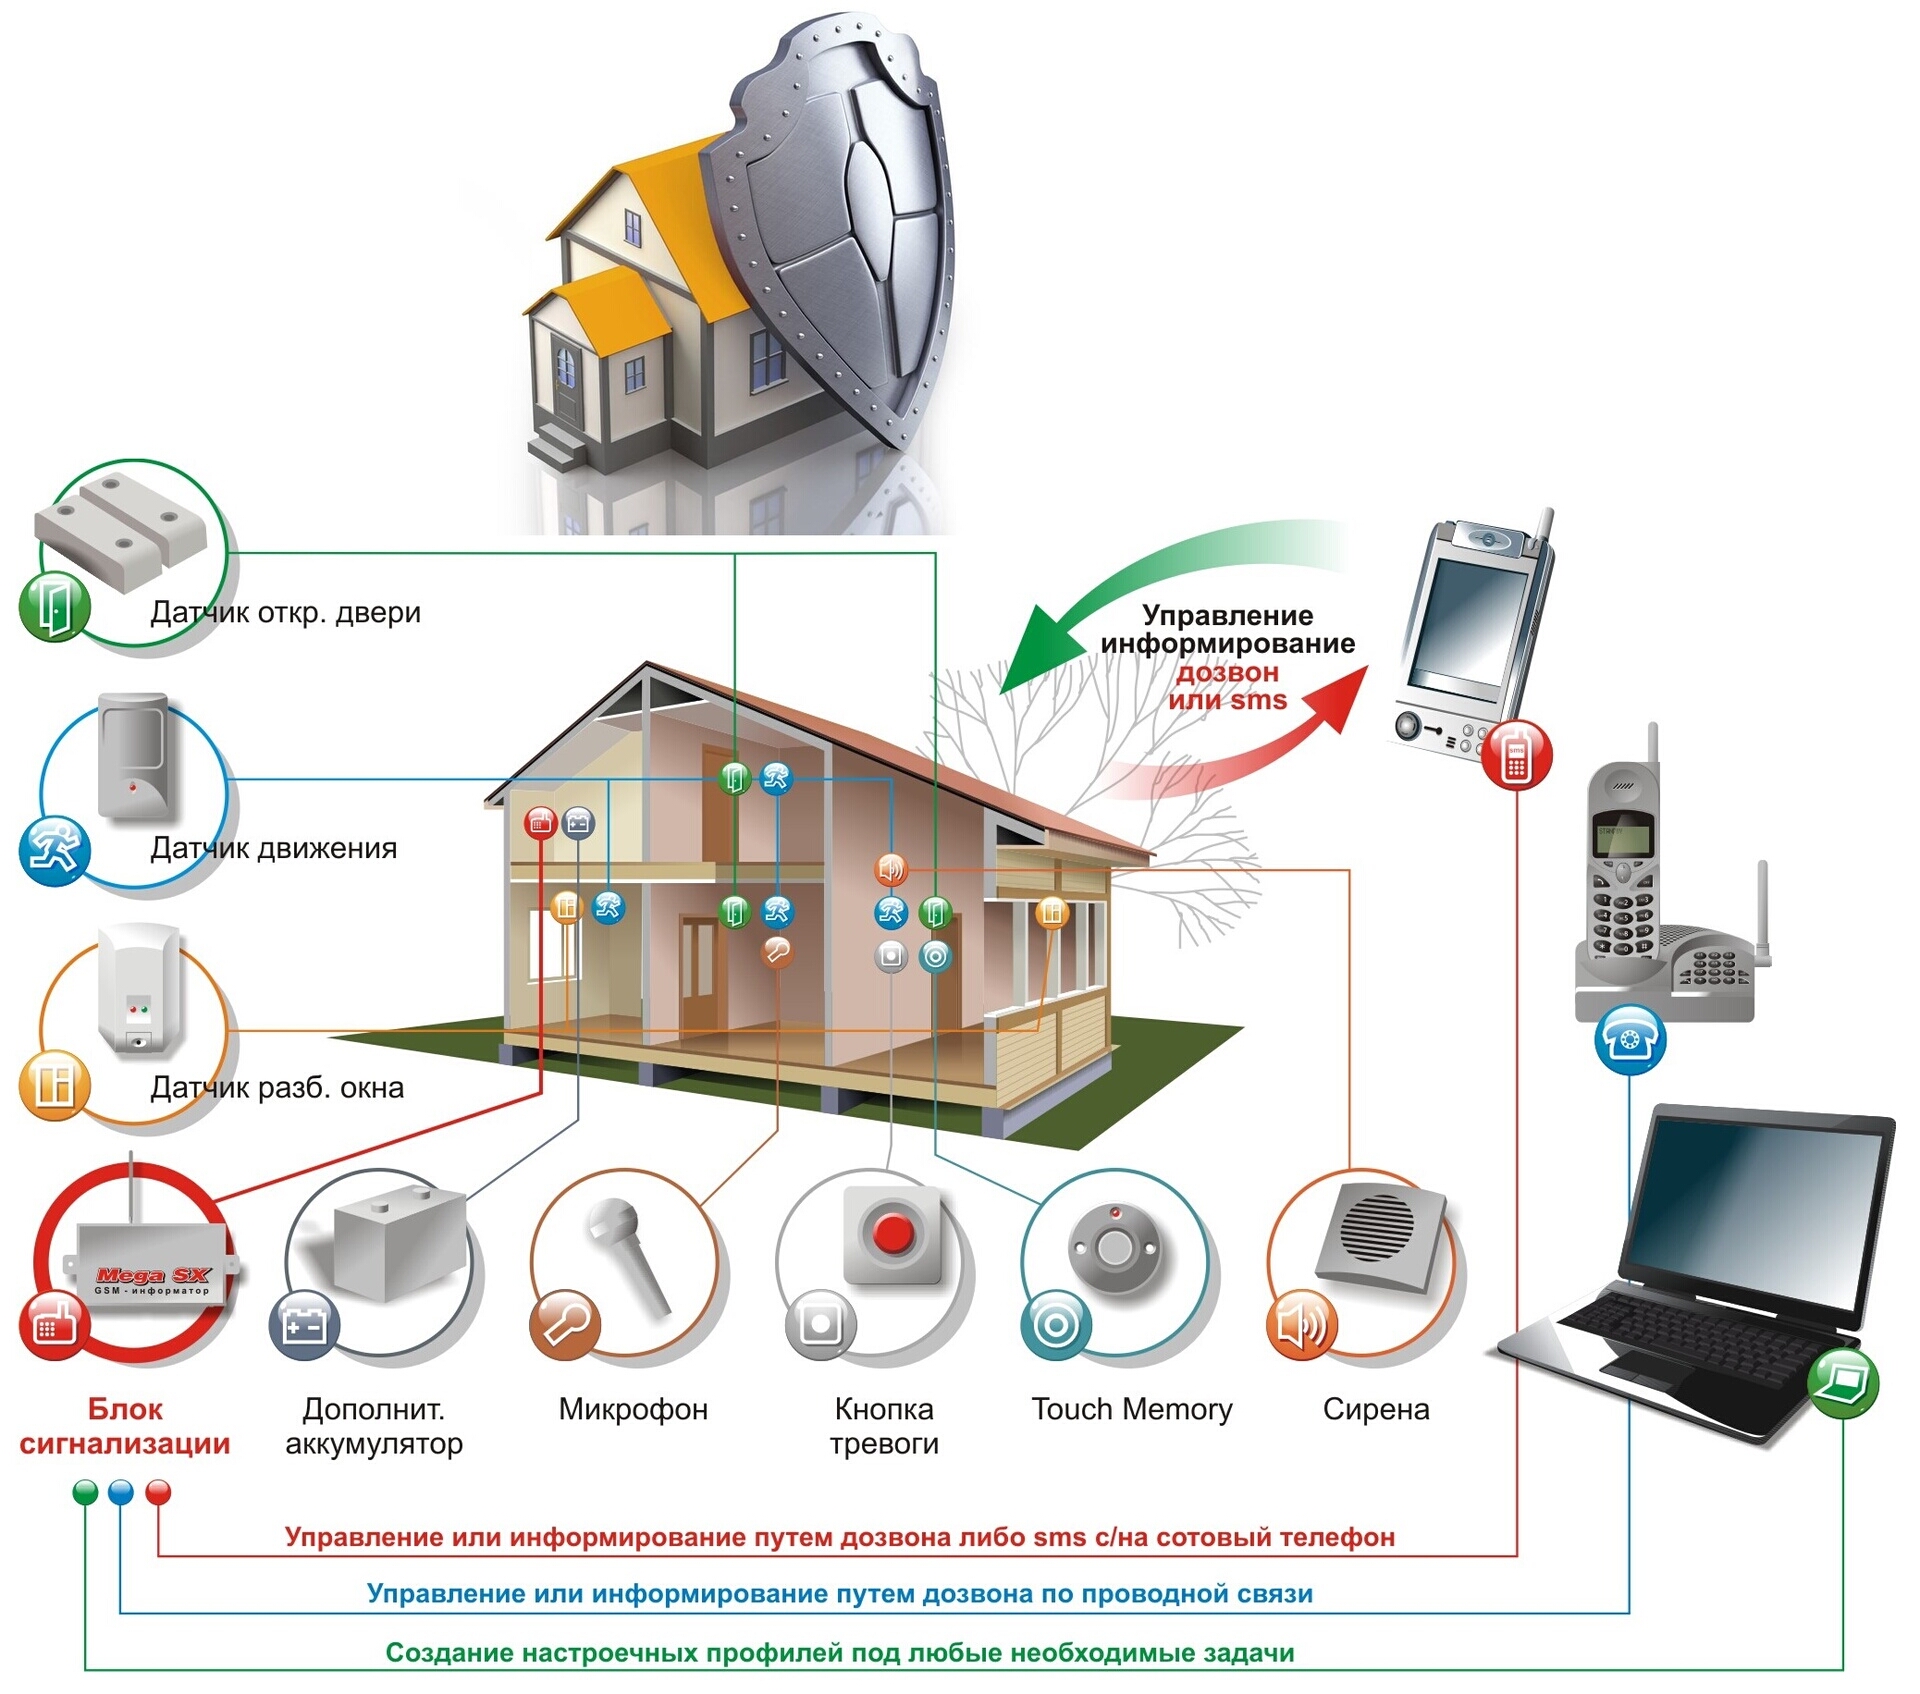 Умная система дома — управление пылесосом с помощью системы Умный дом